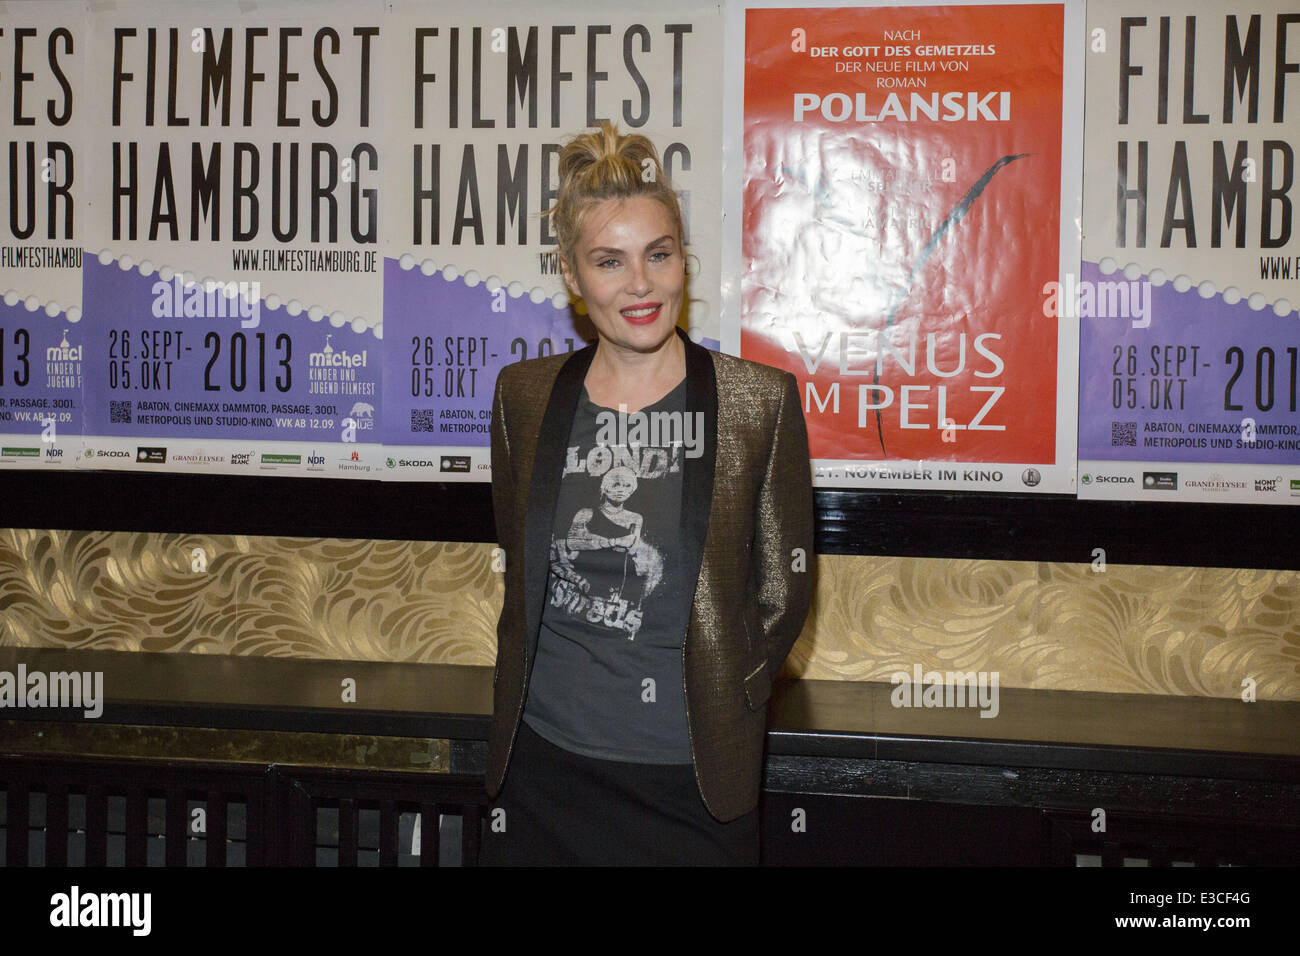 Filmfest Hamburg 2013 - Venus im Pelz - Premiere  Featuring: Emmanuelle Seigner Where: Hamburg, Germany When: 29 Sep 2013 Stock Photo